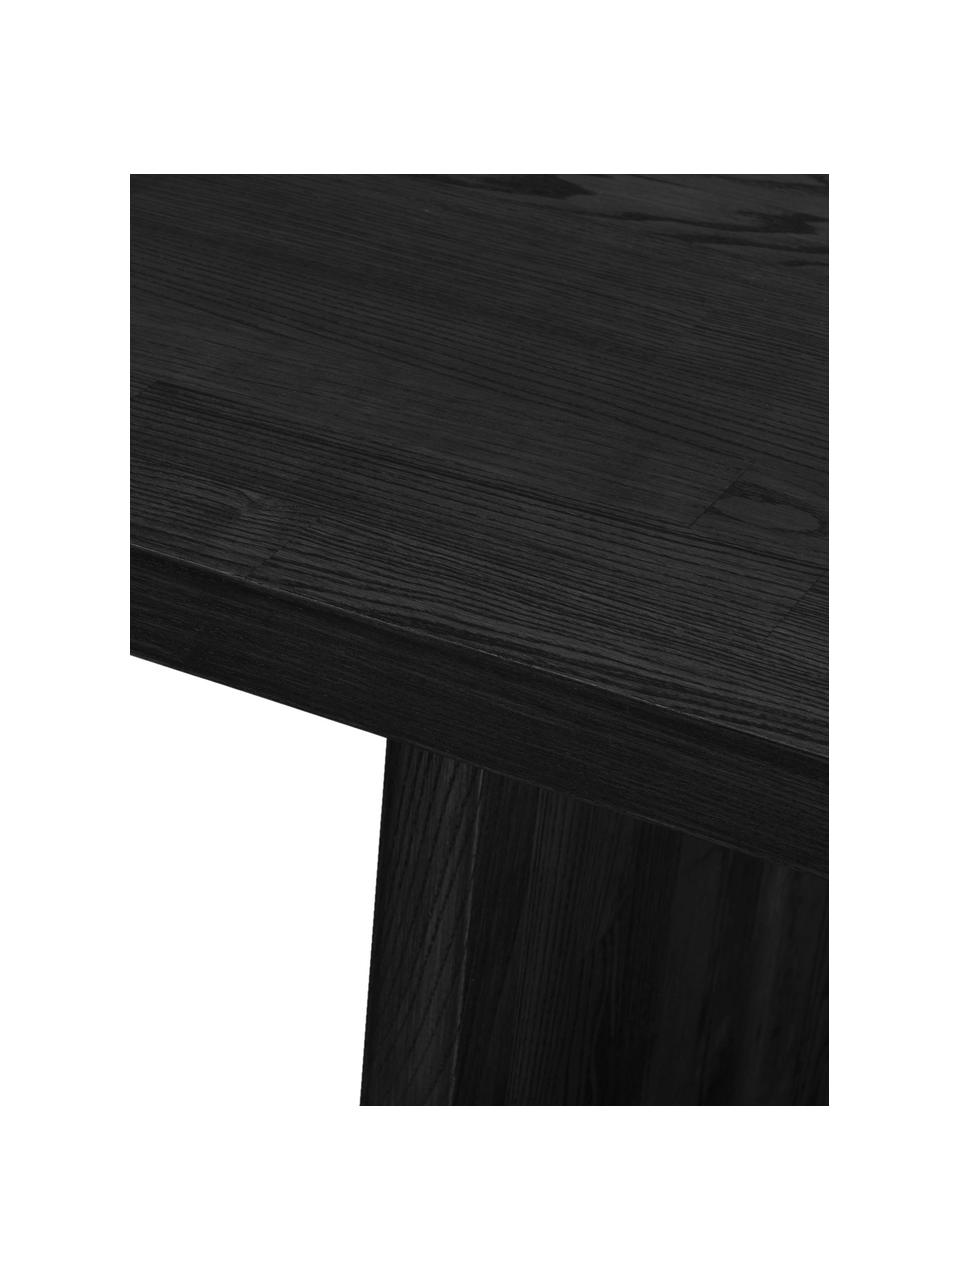 Jídelní stůl z jasanového dřeva Emmet, 240 x 95 cm, Masivní lakované jasanové dřevo, certifikace FSC, Černá, Š 240 cm, H 95 cm